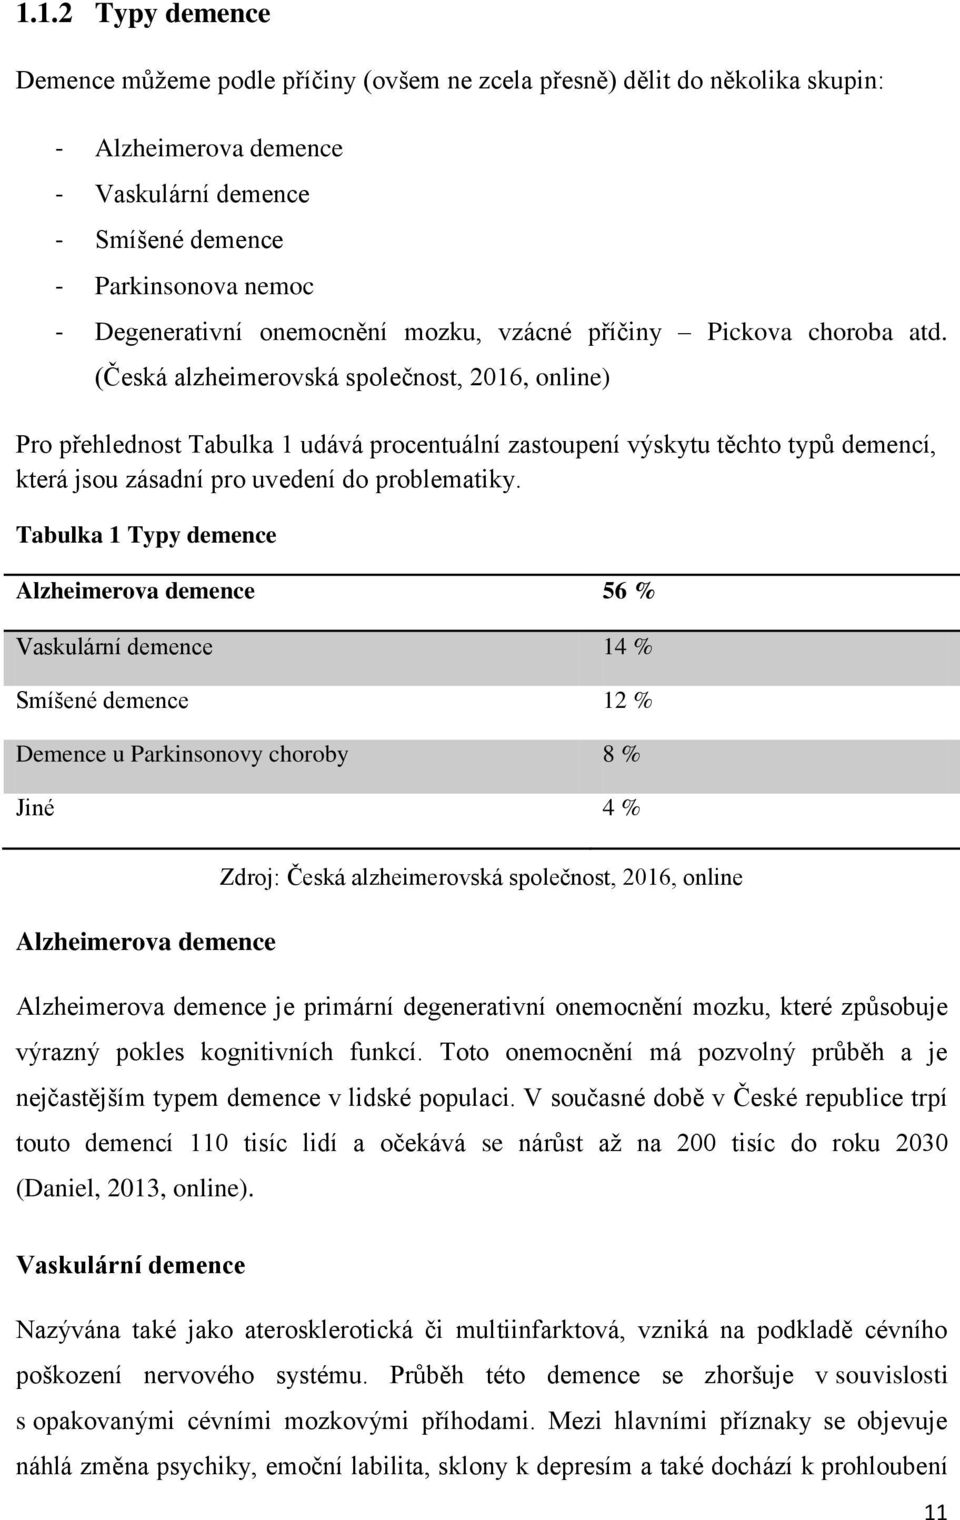 (Česká alzheimerovská společnost, 2016, online) Pro přehlednost Tabulka 1 udává procentuální zastoupení výskytu těchto typů demencí, která jsou zásadní pro uvedení do problematiky.